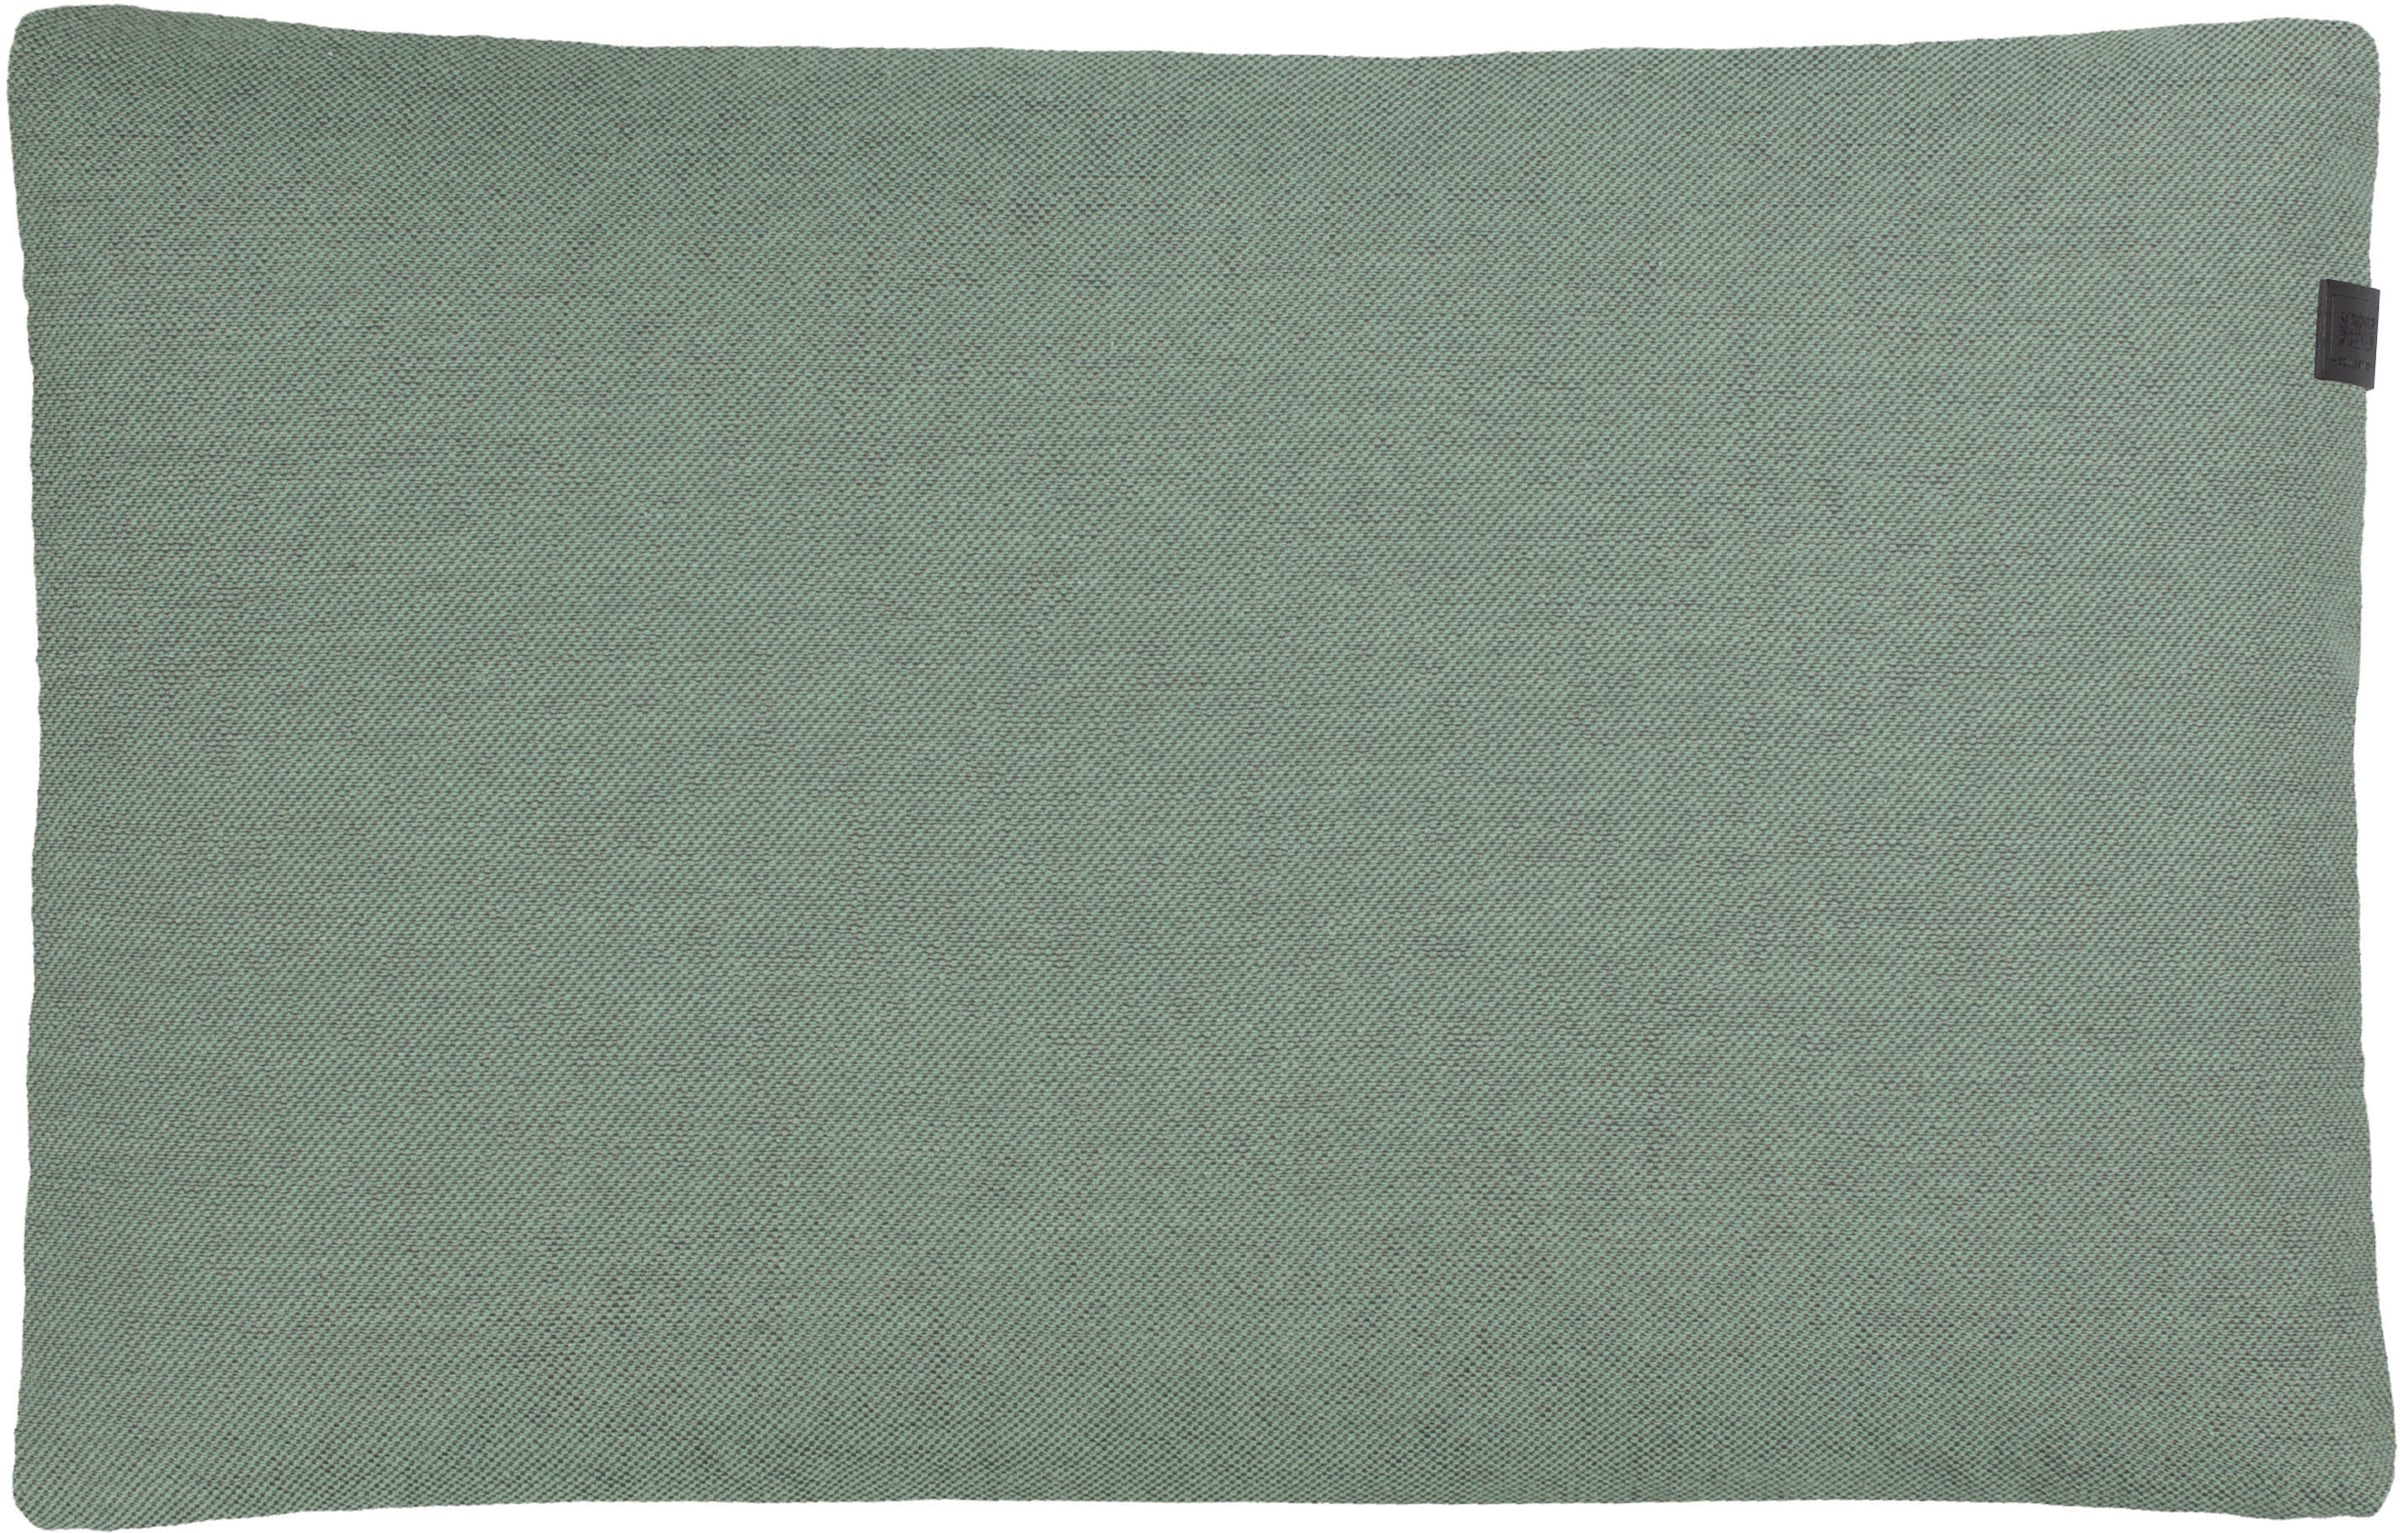 SCHÖNER WOHNEN-Kollektion Kissenhülle »Solo«, (1 St.), 38x58 cm